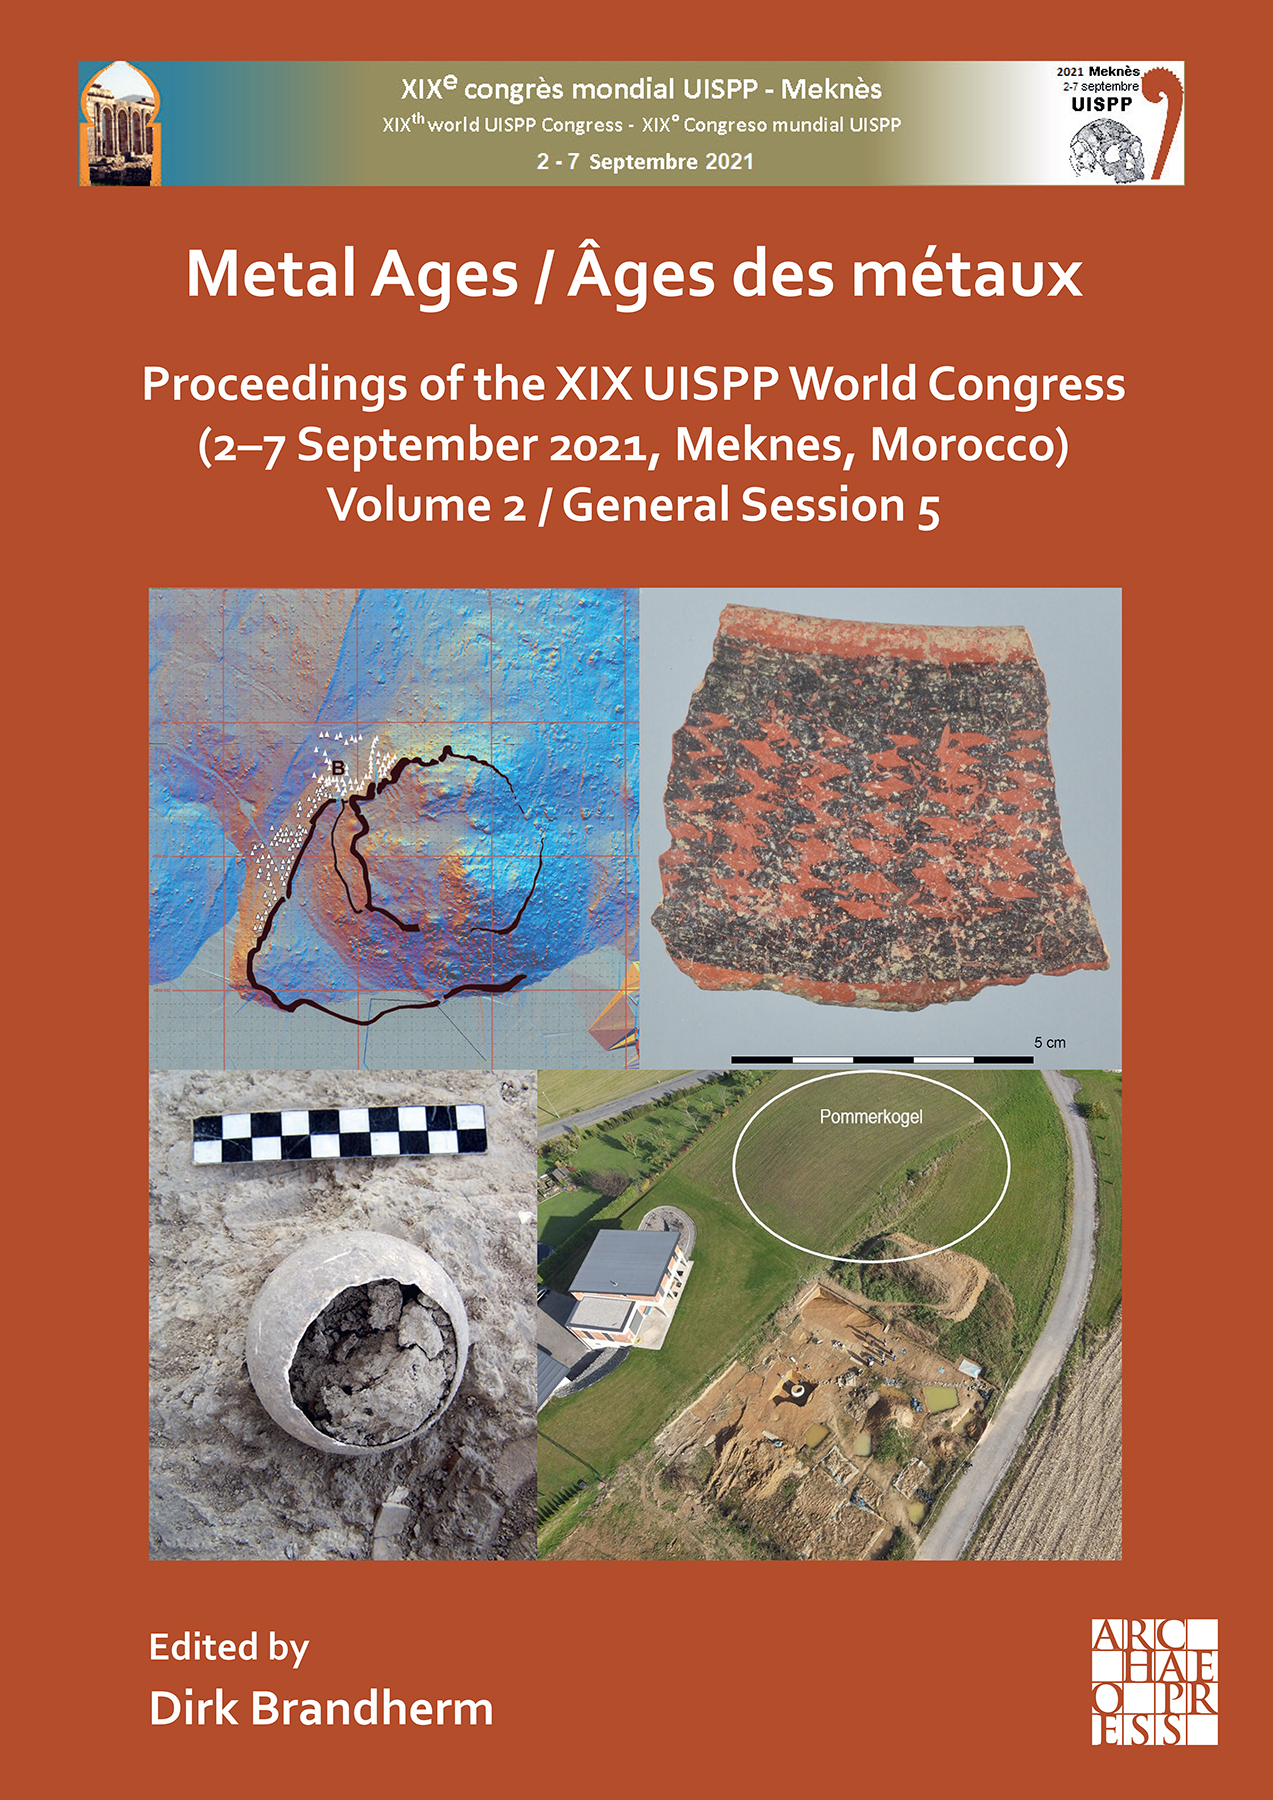 Metal Ages / Âges des métaux, (actes XIXe coll. UISPP, Meknes, Morocco, 2–7 Sept. 2021), Volume 2, General Session 5, 2023, 130 p., 54 ill.